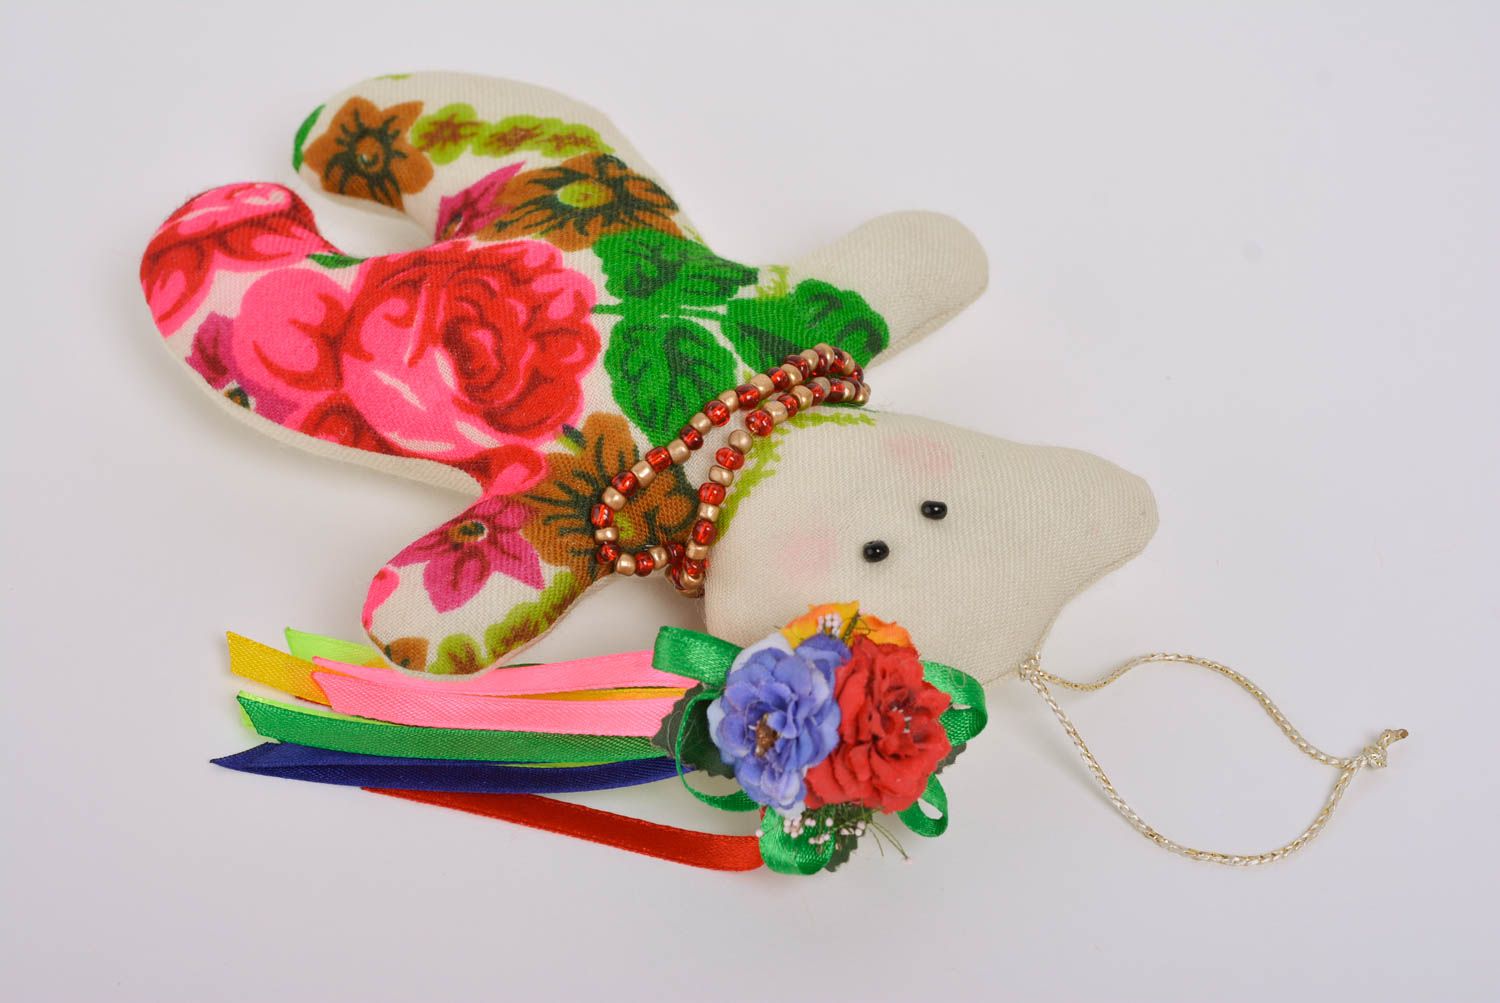 Joli jouet mou en tissu fait main en forme d'ourse sympa avec fleurs cadeau photo 3